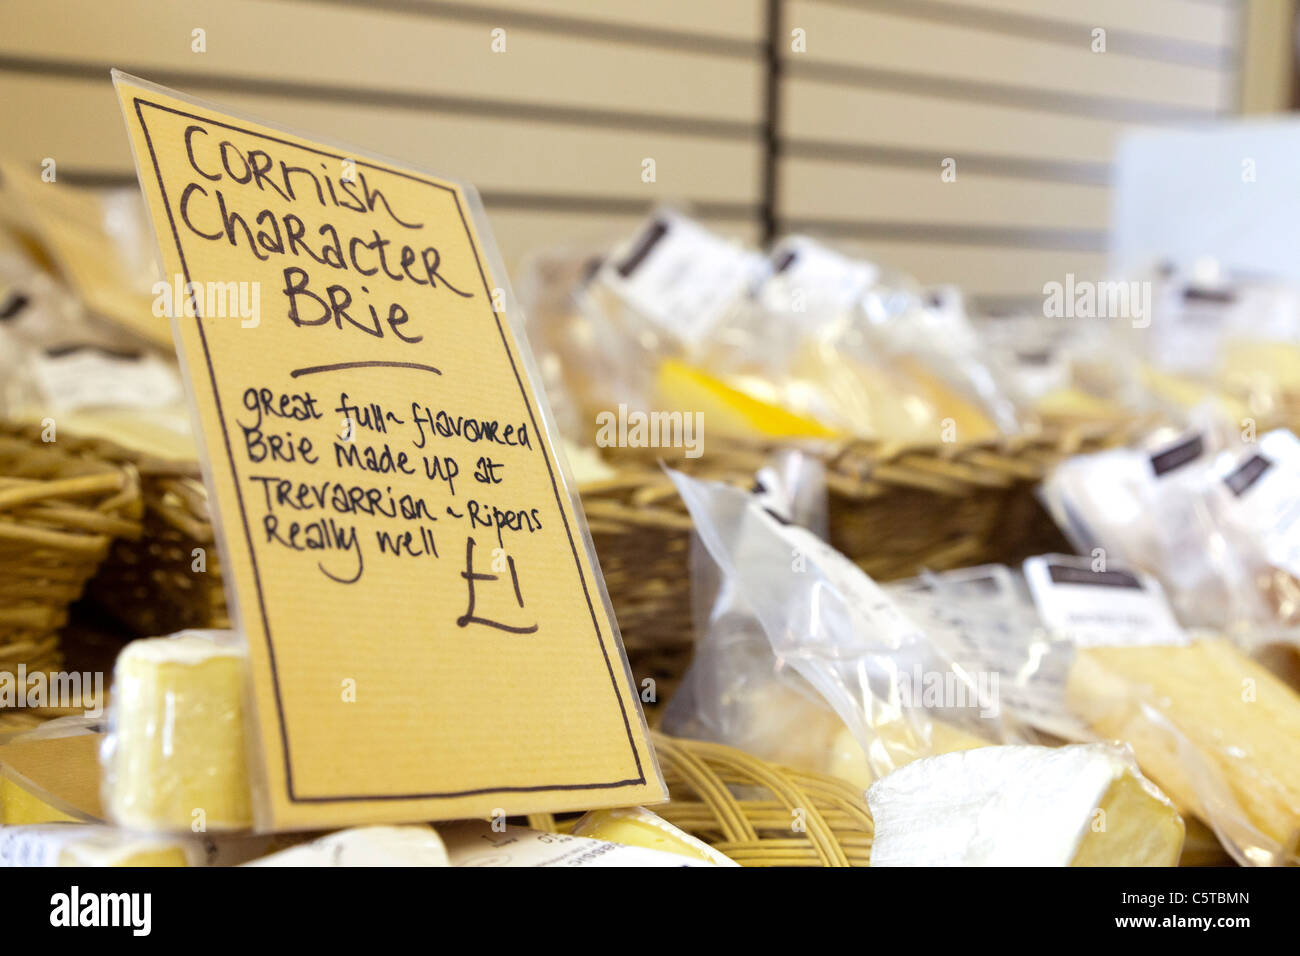 Caractère Cornish Brie à la vente à un marché de producteurs à Cornwall Banque D'Images